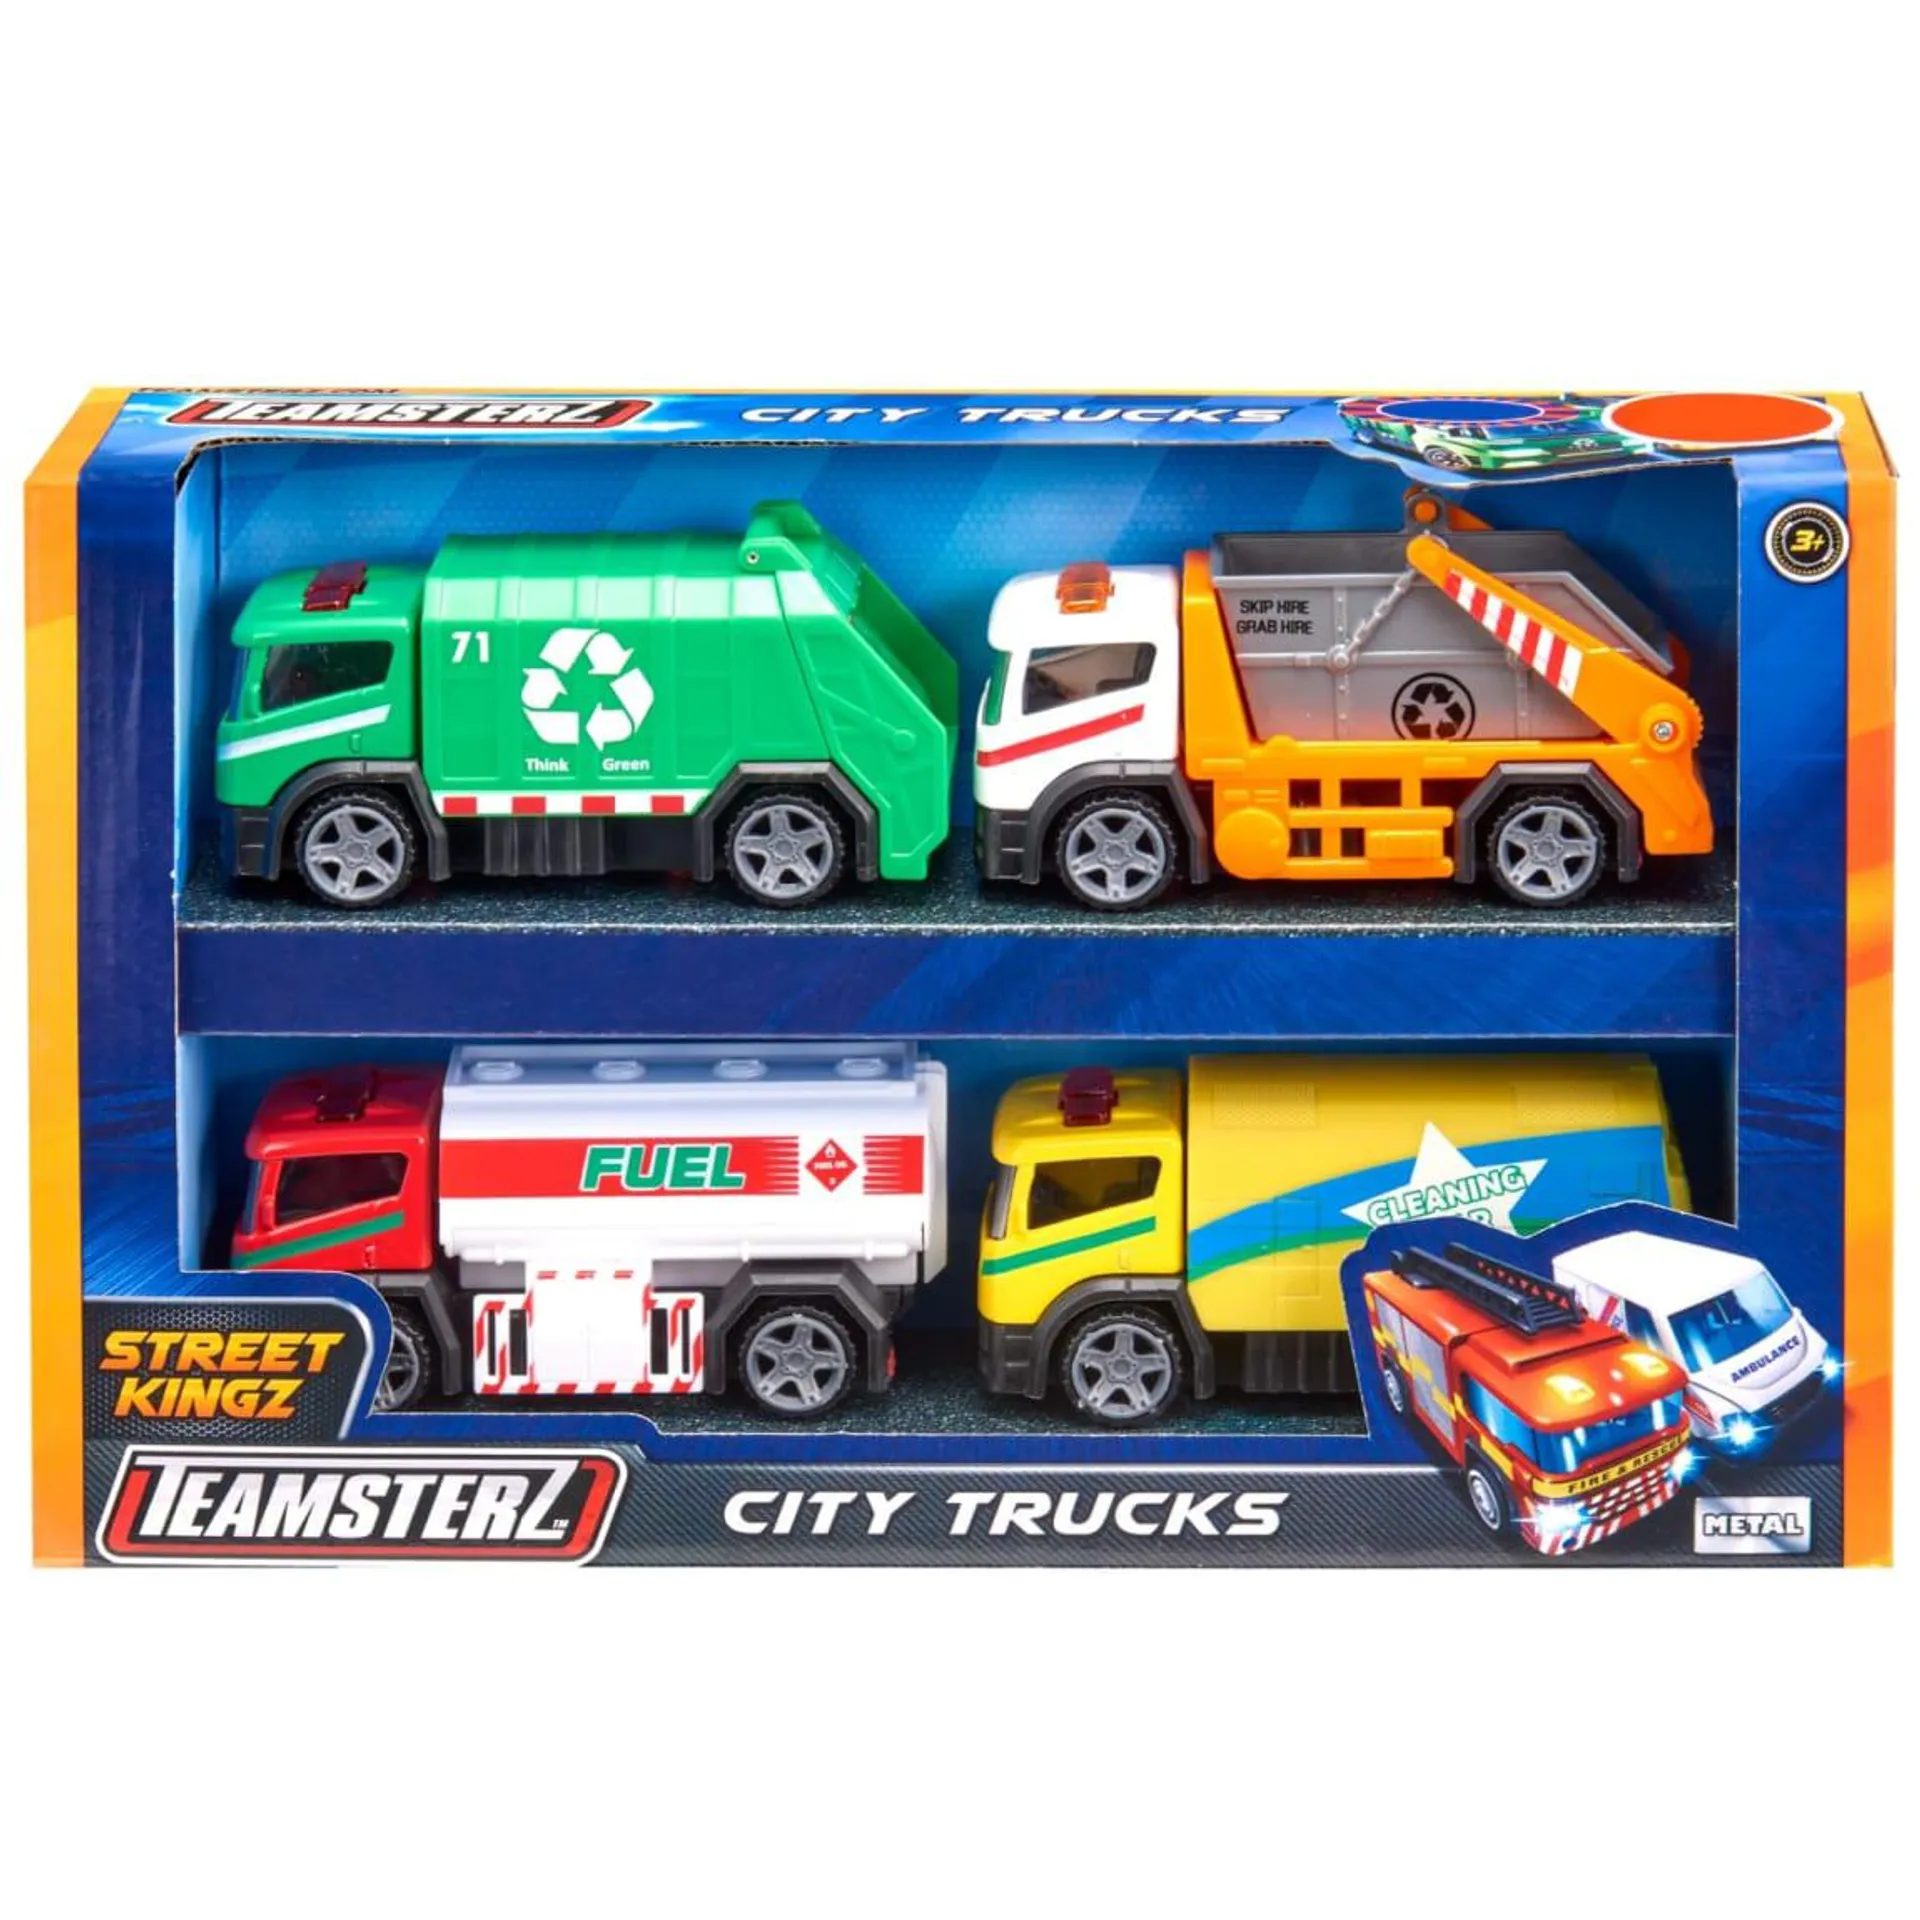 Teamsterz City Trucks 4pk